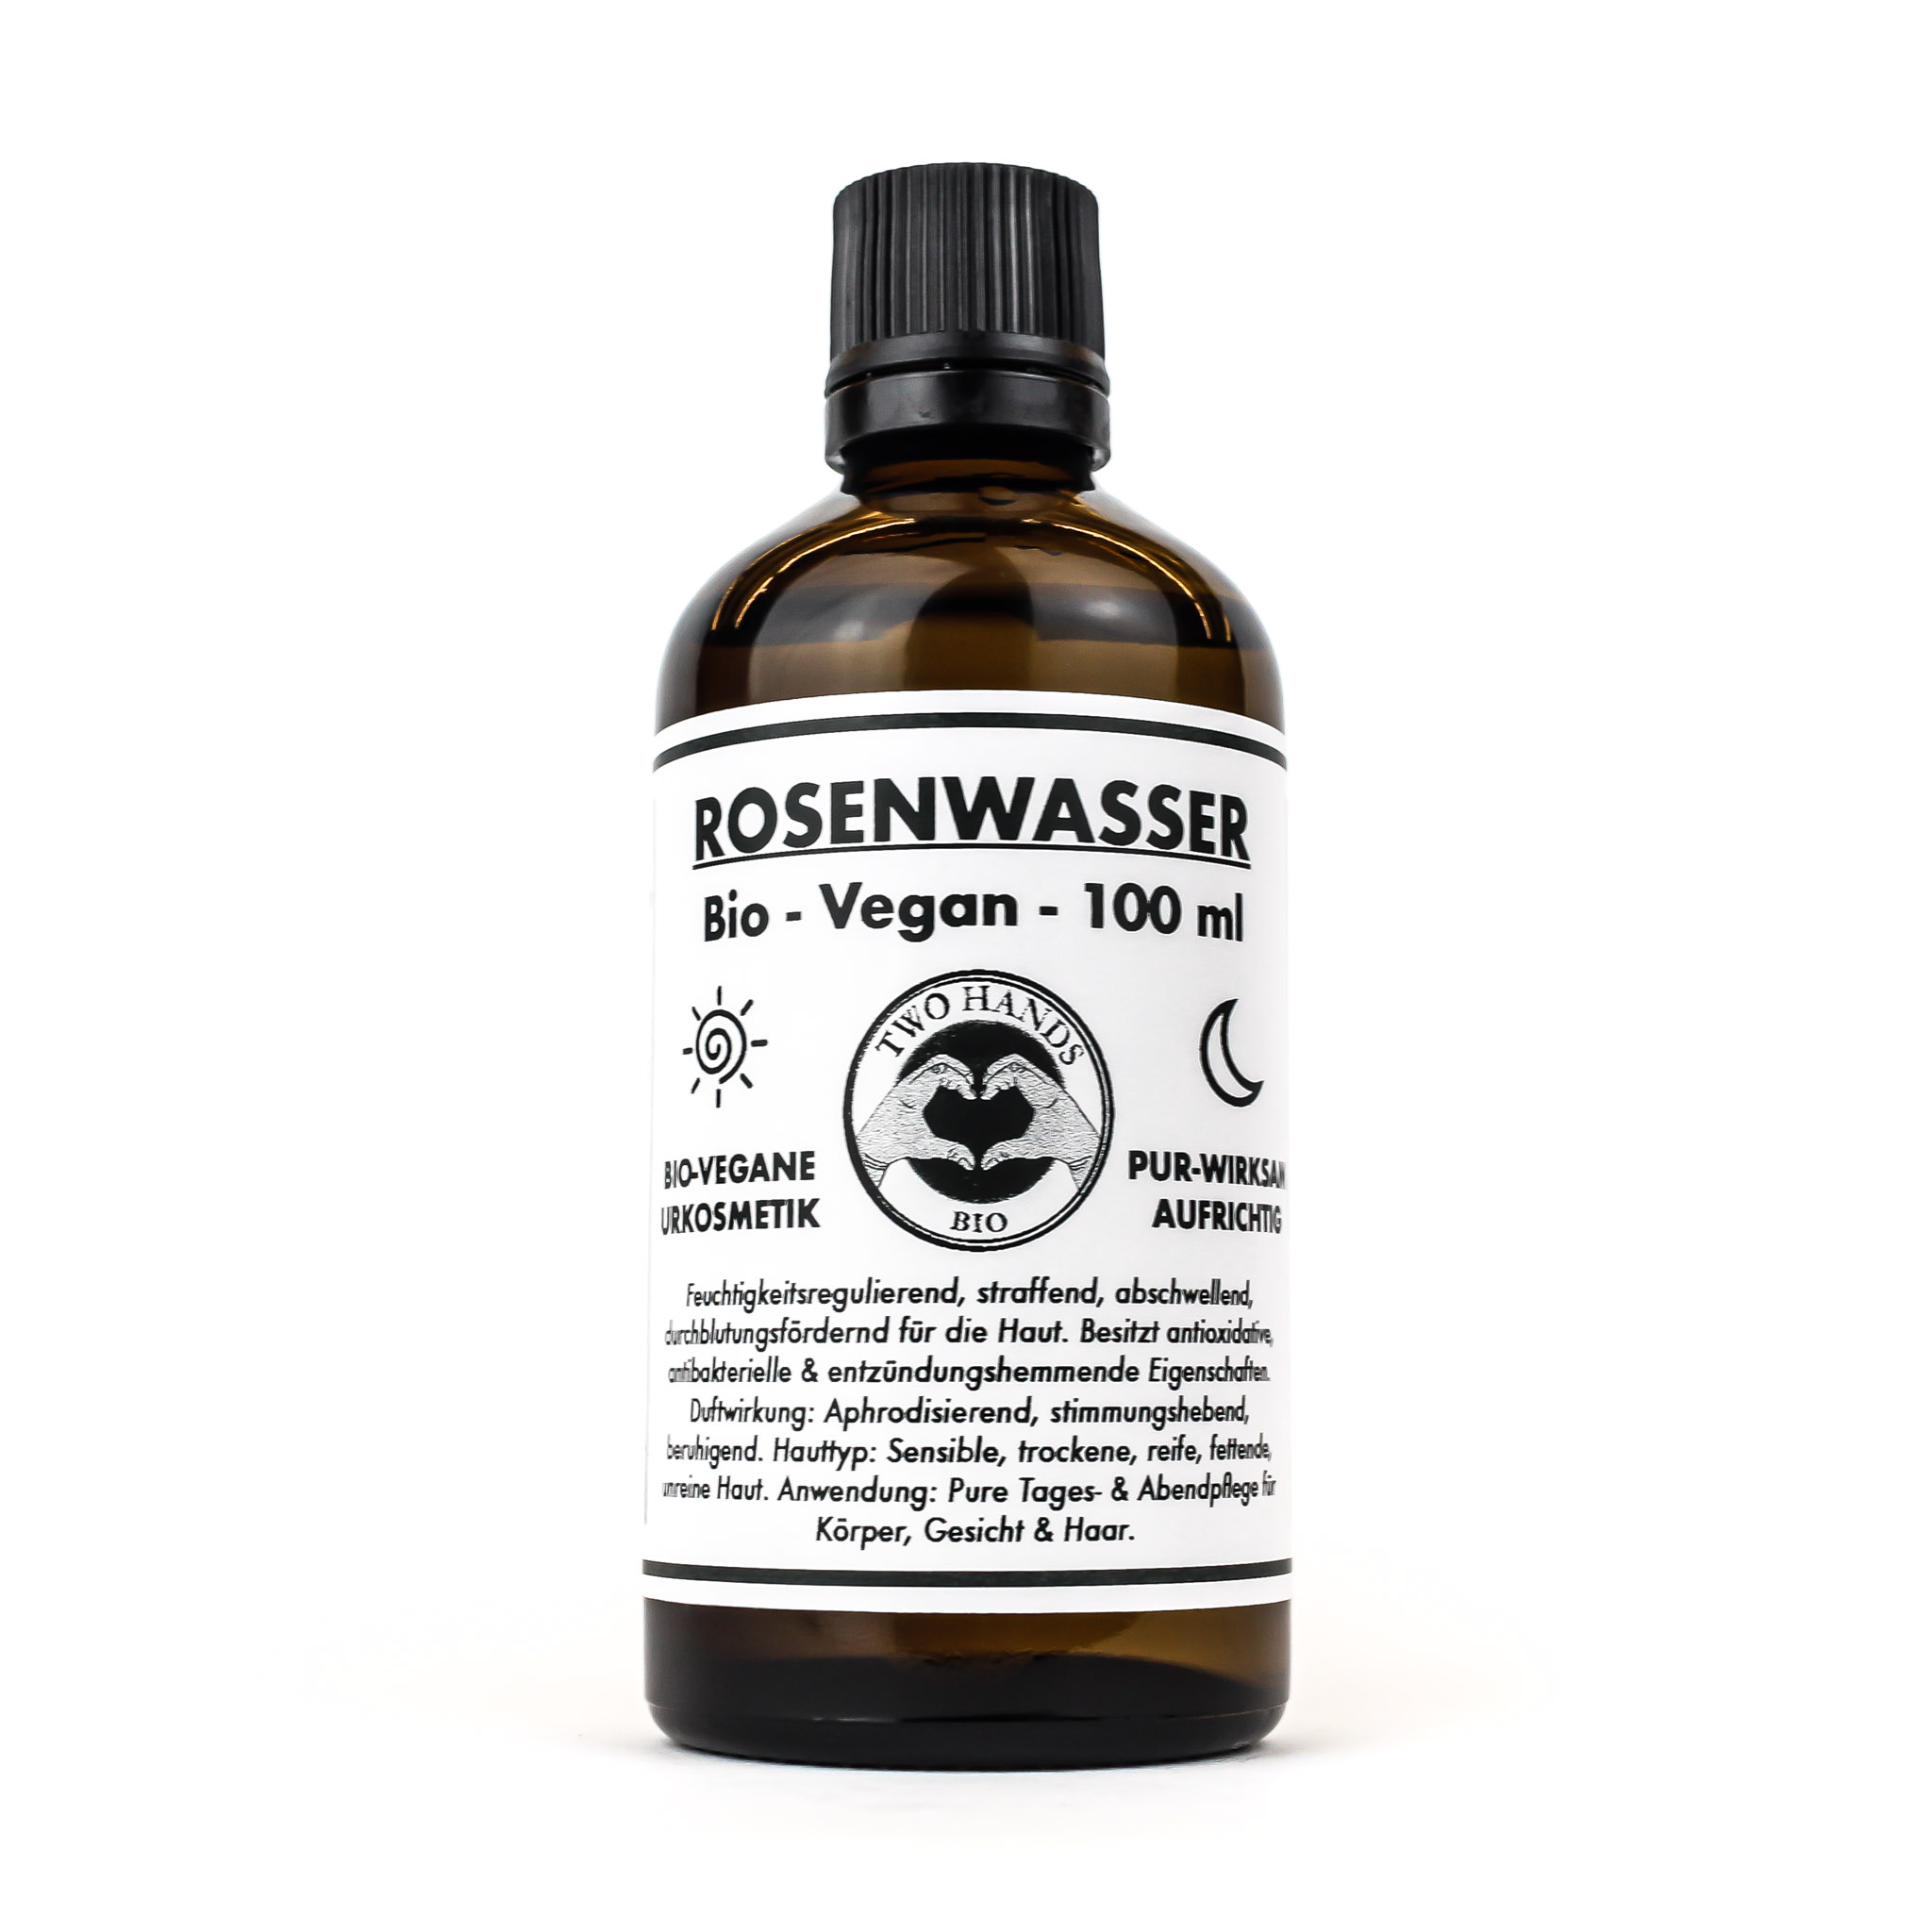 Rosenwasser - Bio - Vegan - 100 ml